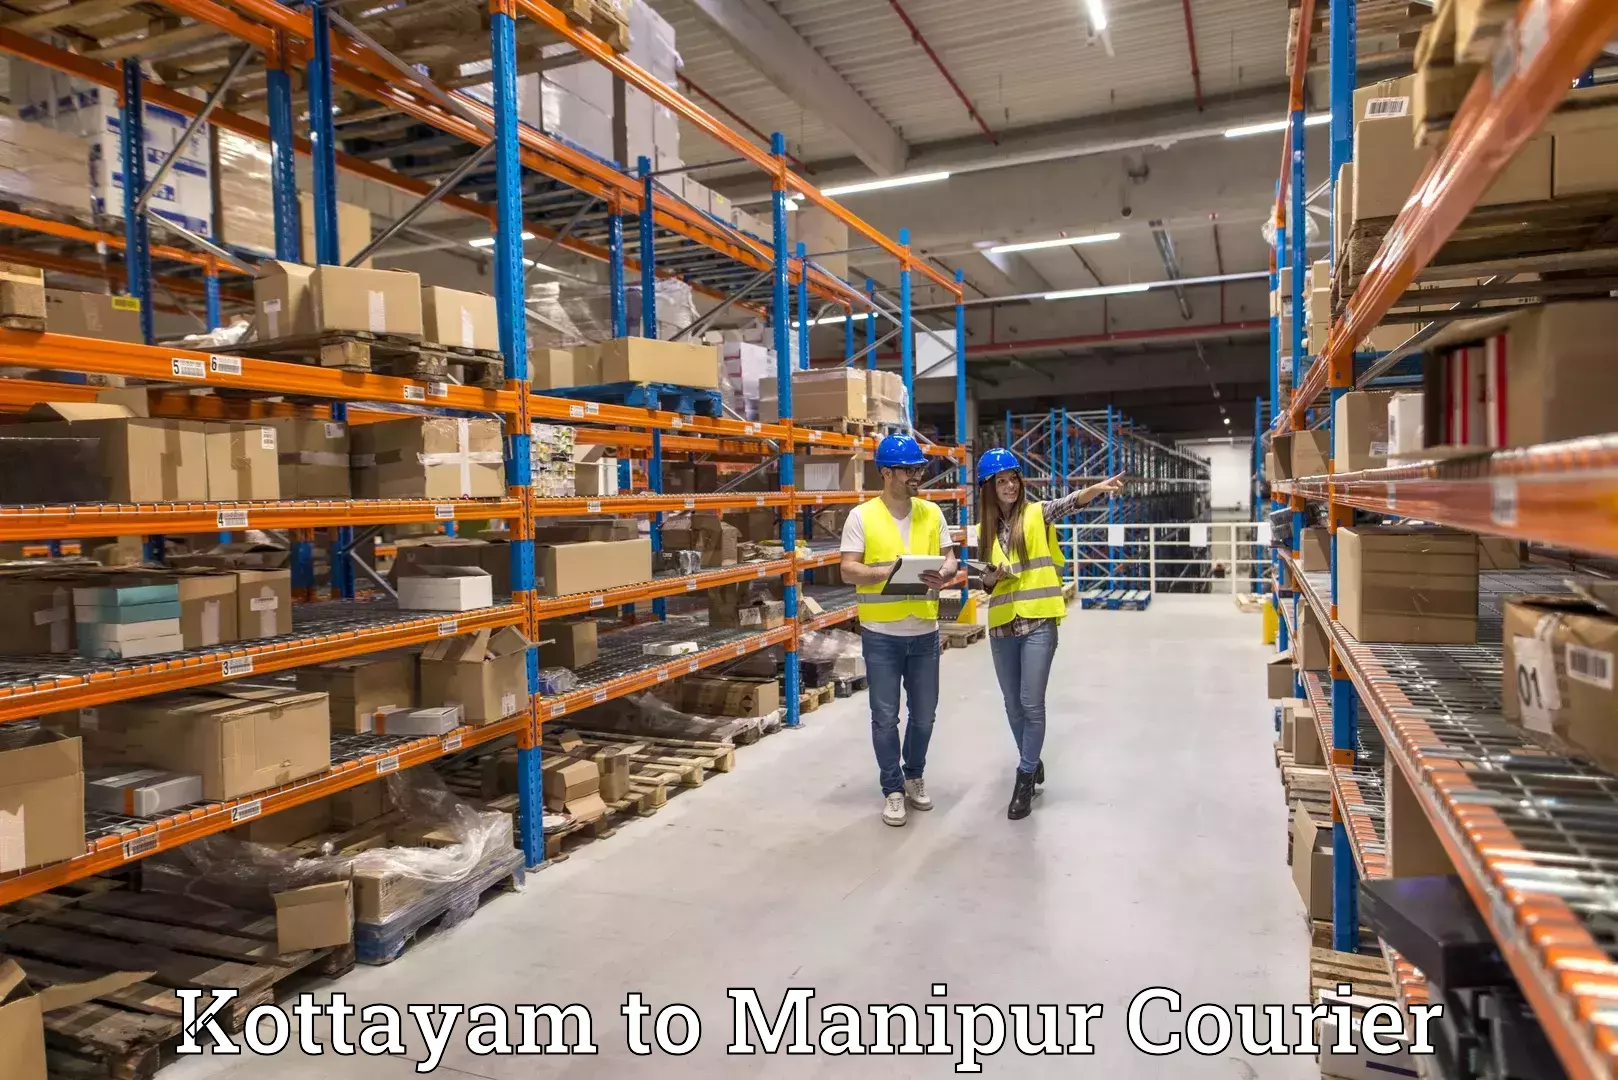 Global logistics network Kottayam to Thoubal